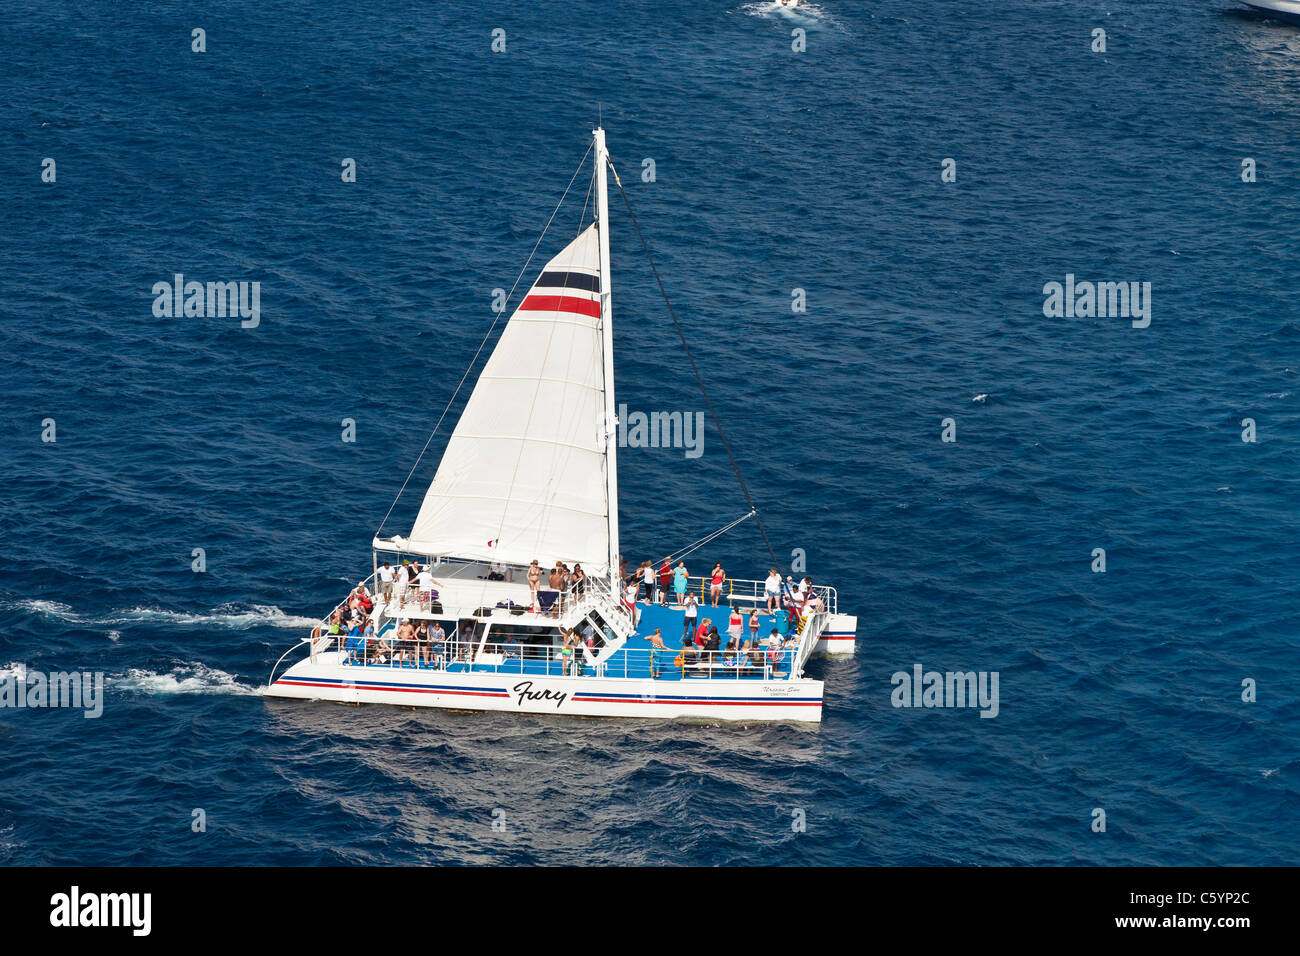 Excursion de croisière catamaran à voile renvoie à quai dans la mer des Caraïbes au large de Cozumel, Mexique Banque D'Images